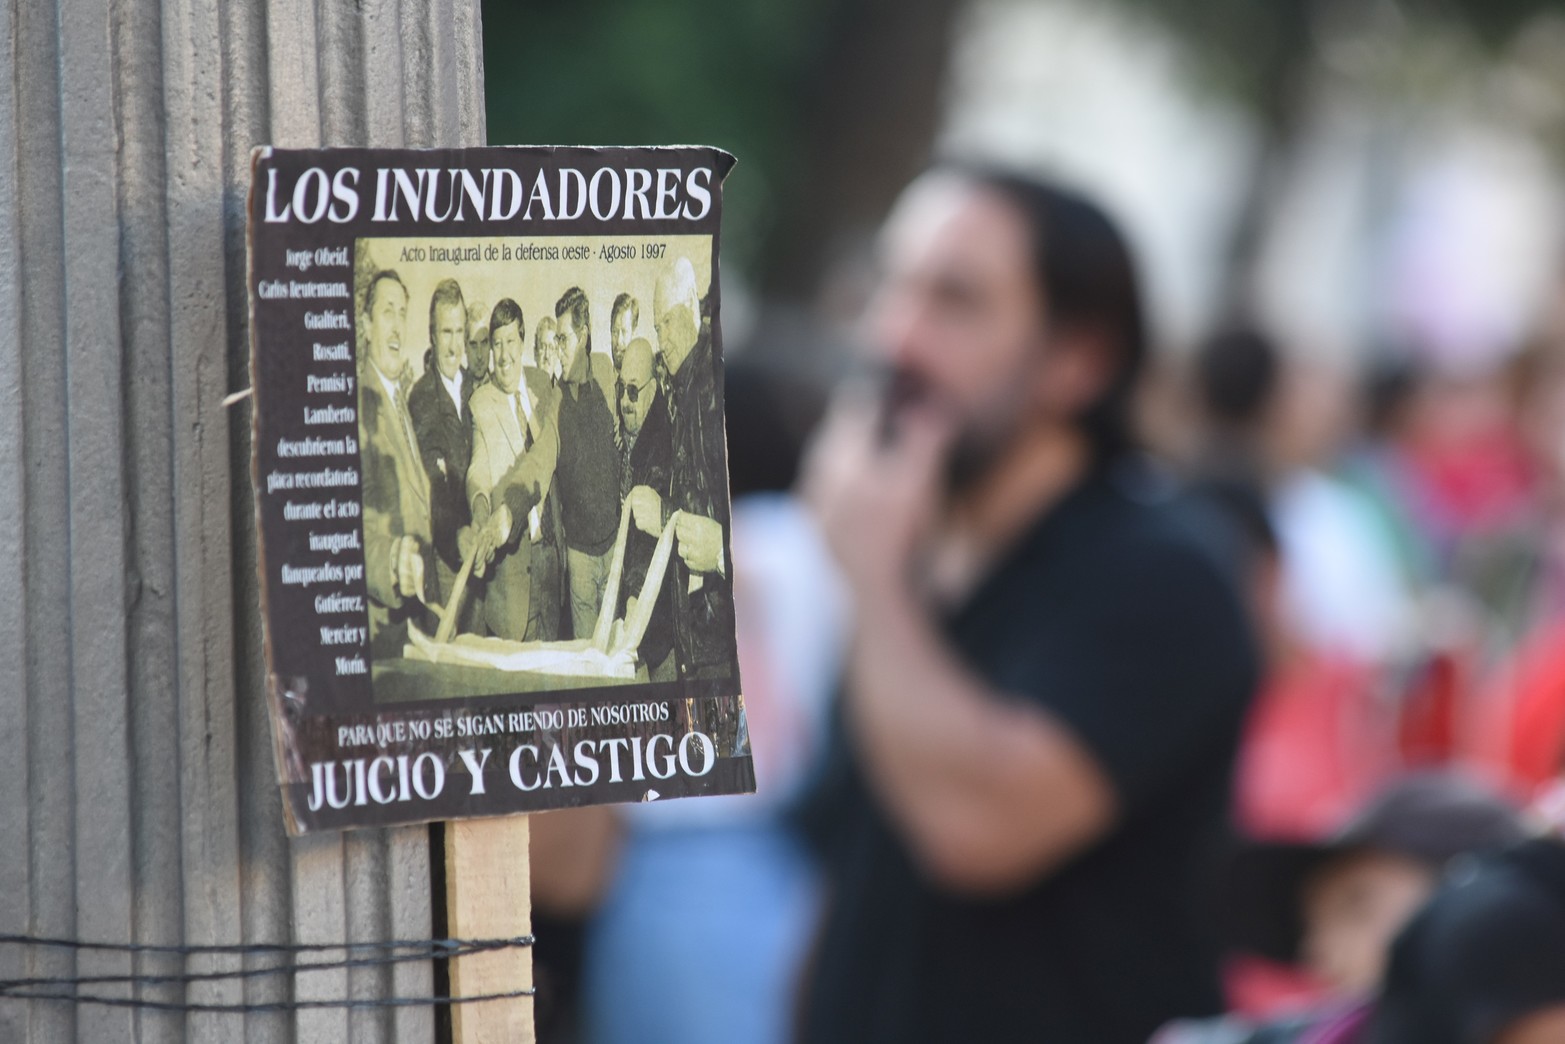 Como cada 29 de abril, este año inundados y agrupaciones políticas llegaron hasta plaza 25 de Mayo a pedir Justicia. Foto Mauricio Garín